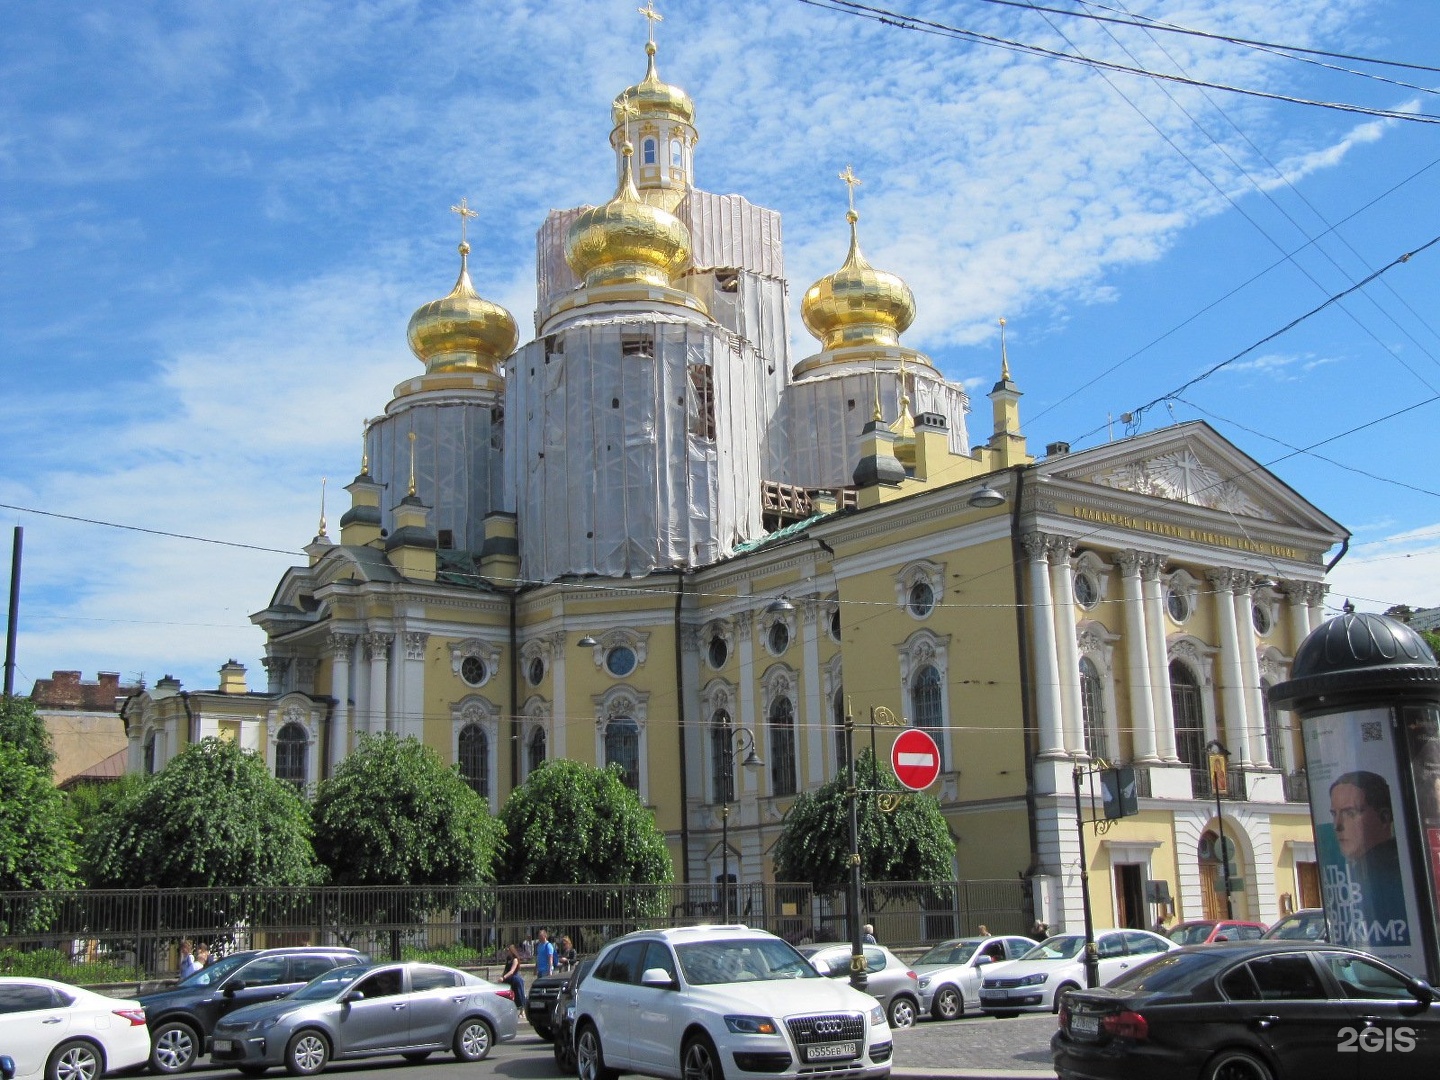 владимирская церковь санкт петербург старые